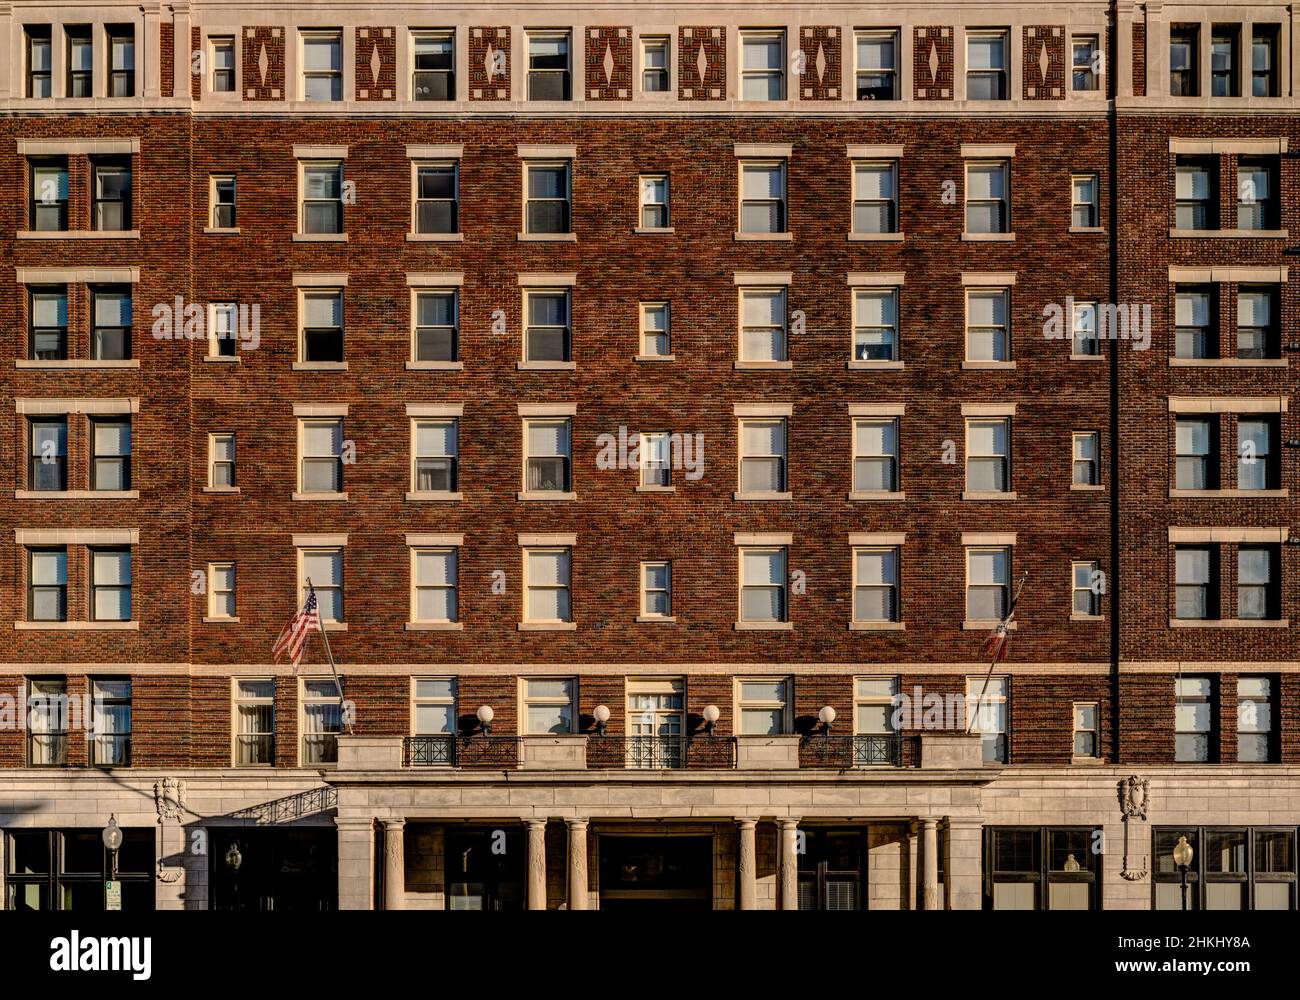 Photographie d'élévation architecturale du bâtiment du début du siècle.Un mur de fenêtres et de briques. Banque D'Images